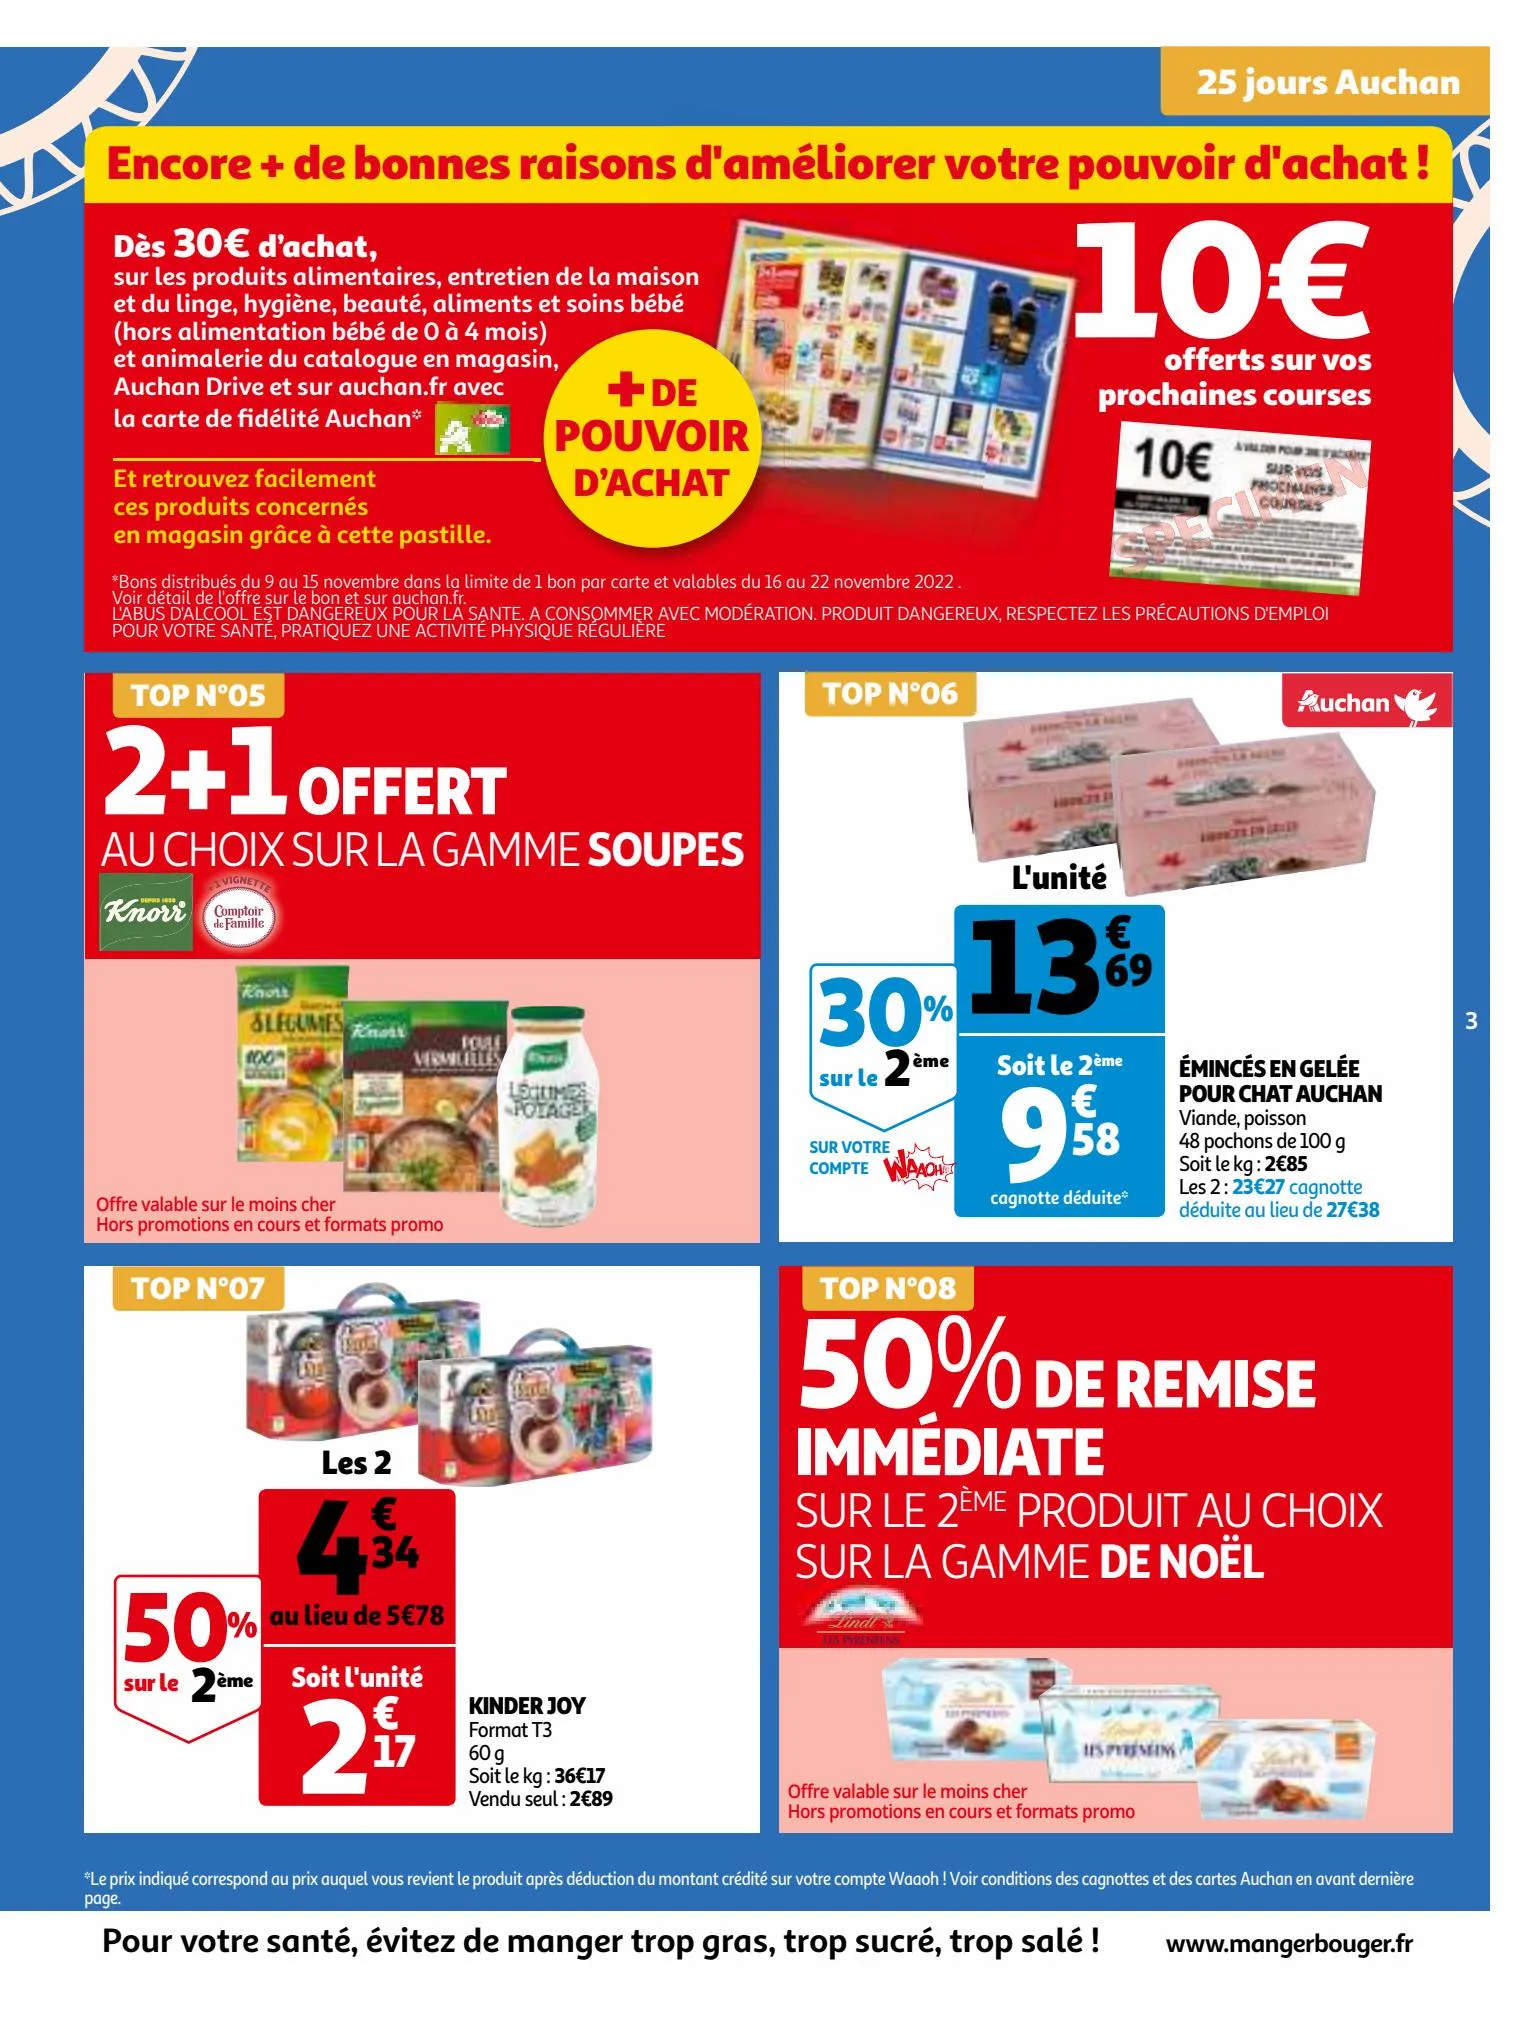 Catalogue 25 Jours Auchan, page 00003